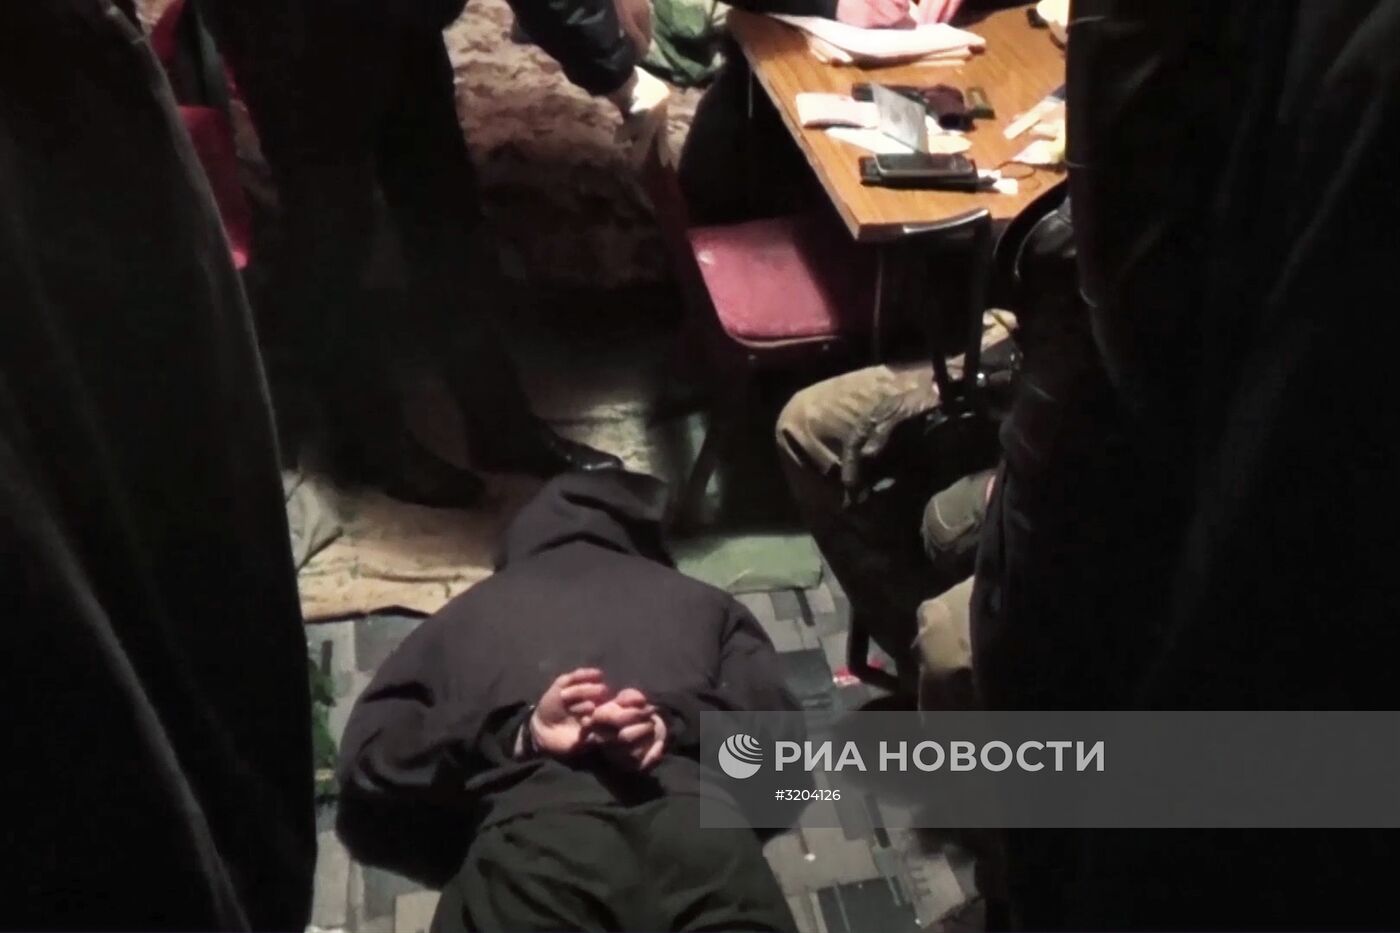 В Подмосковье задержали боевиков ИГ (террористическая организация, запрещена в России), готовивших теракты